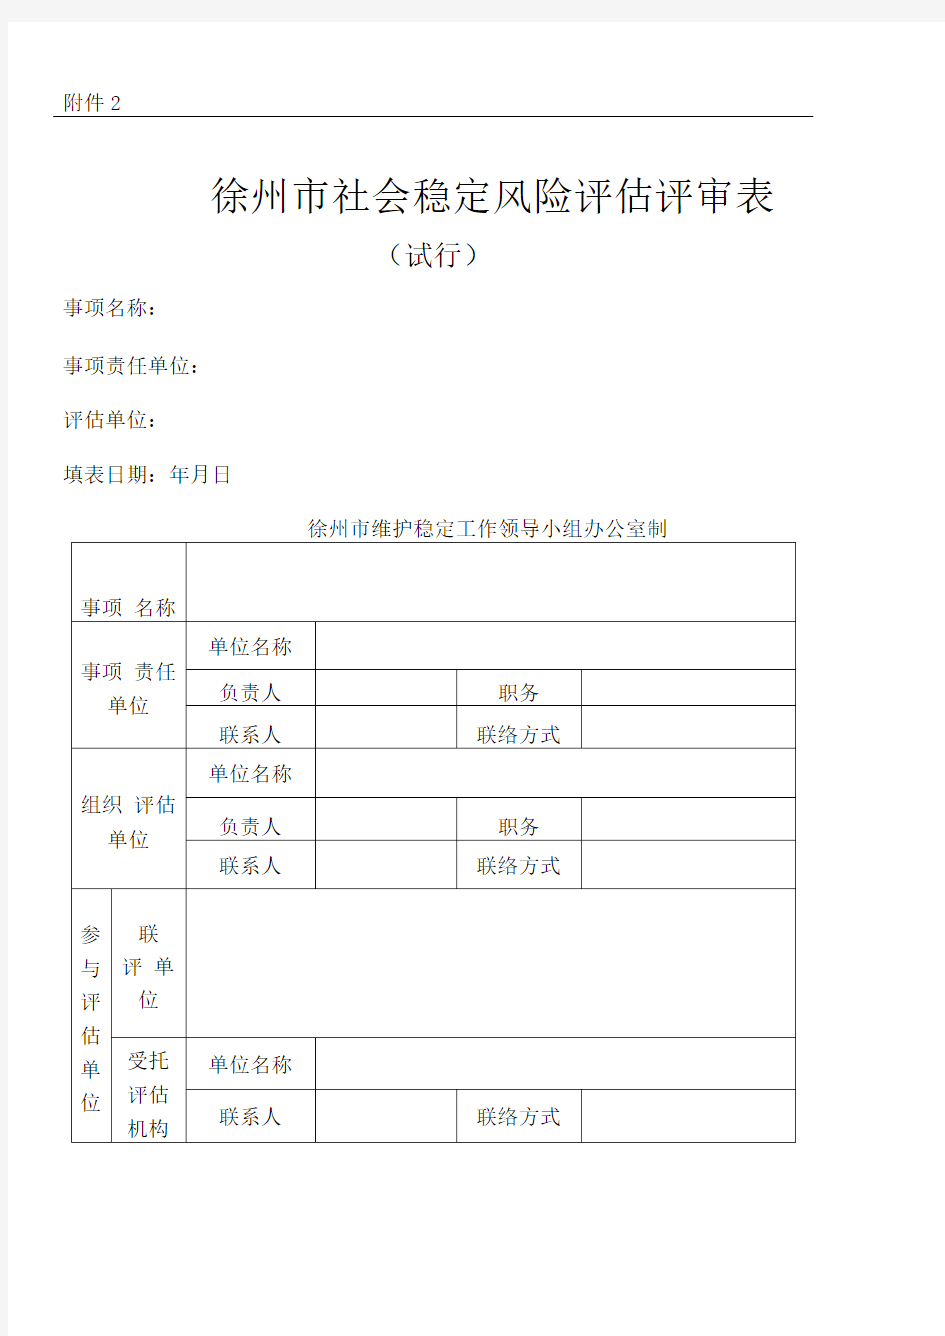 徐州市社会稳定风险评估评审表